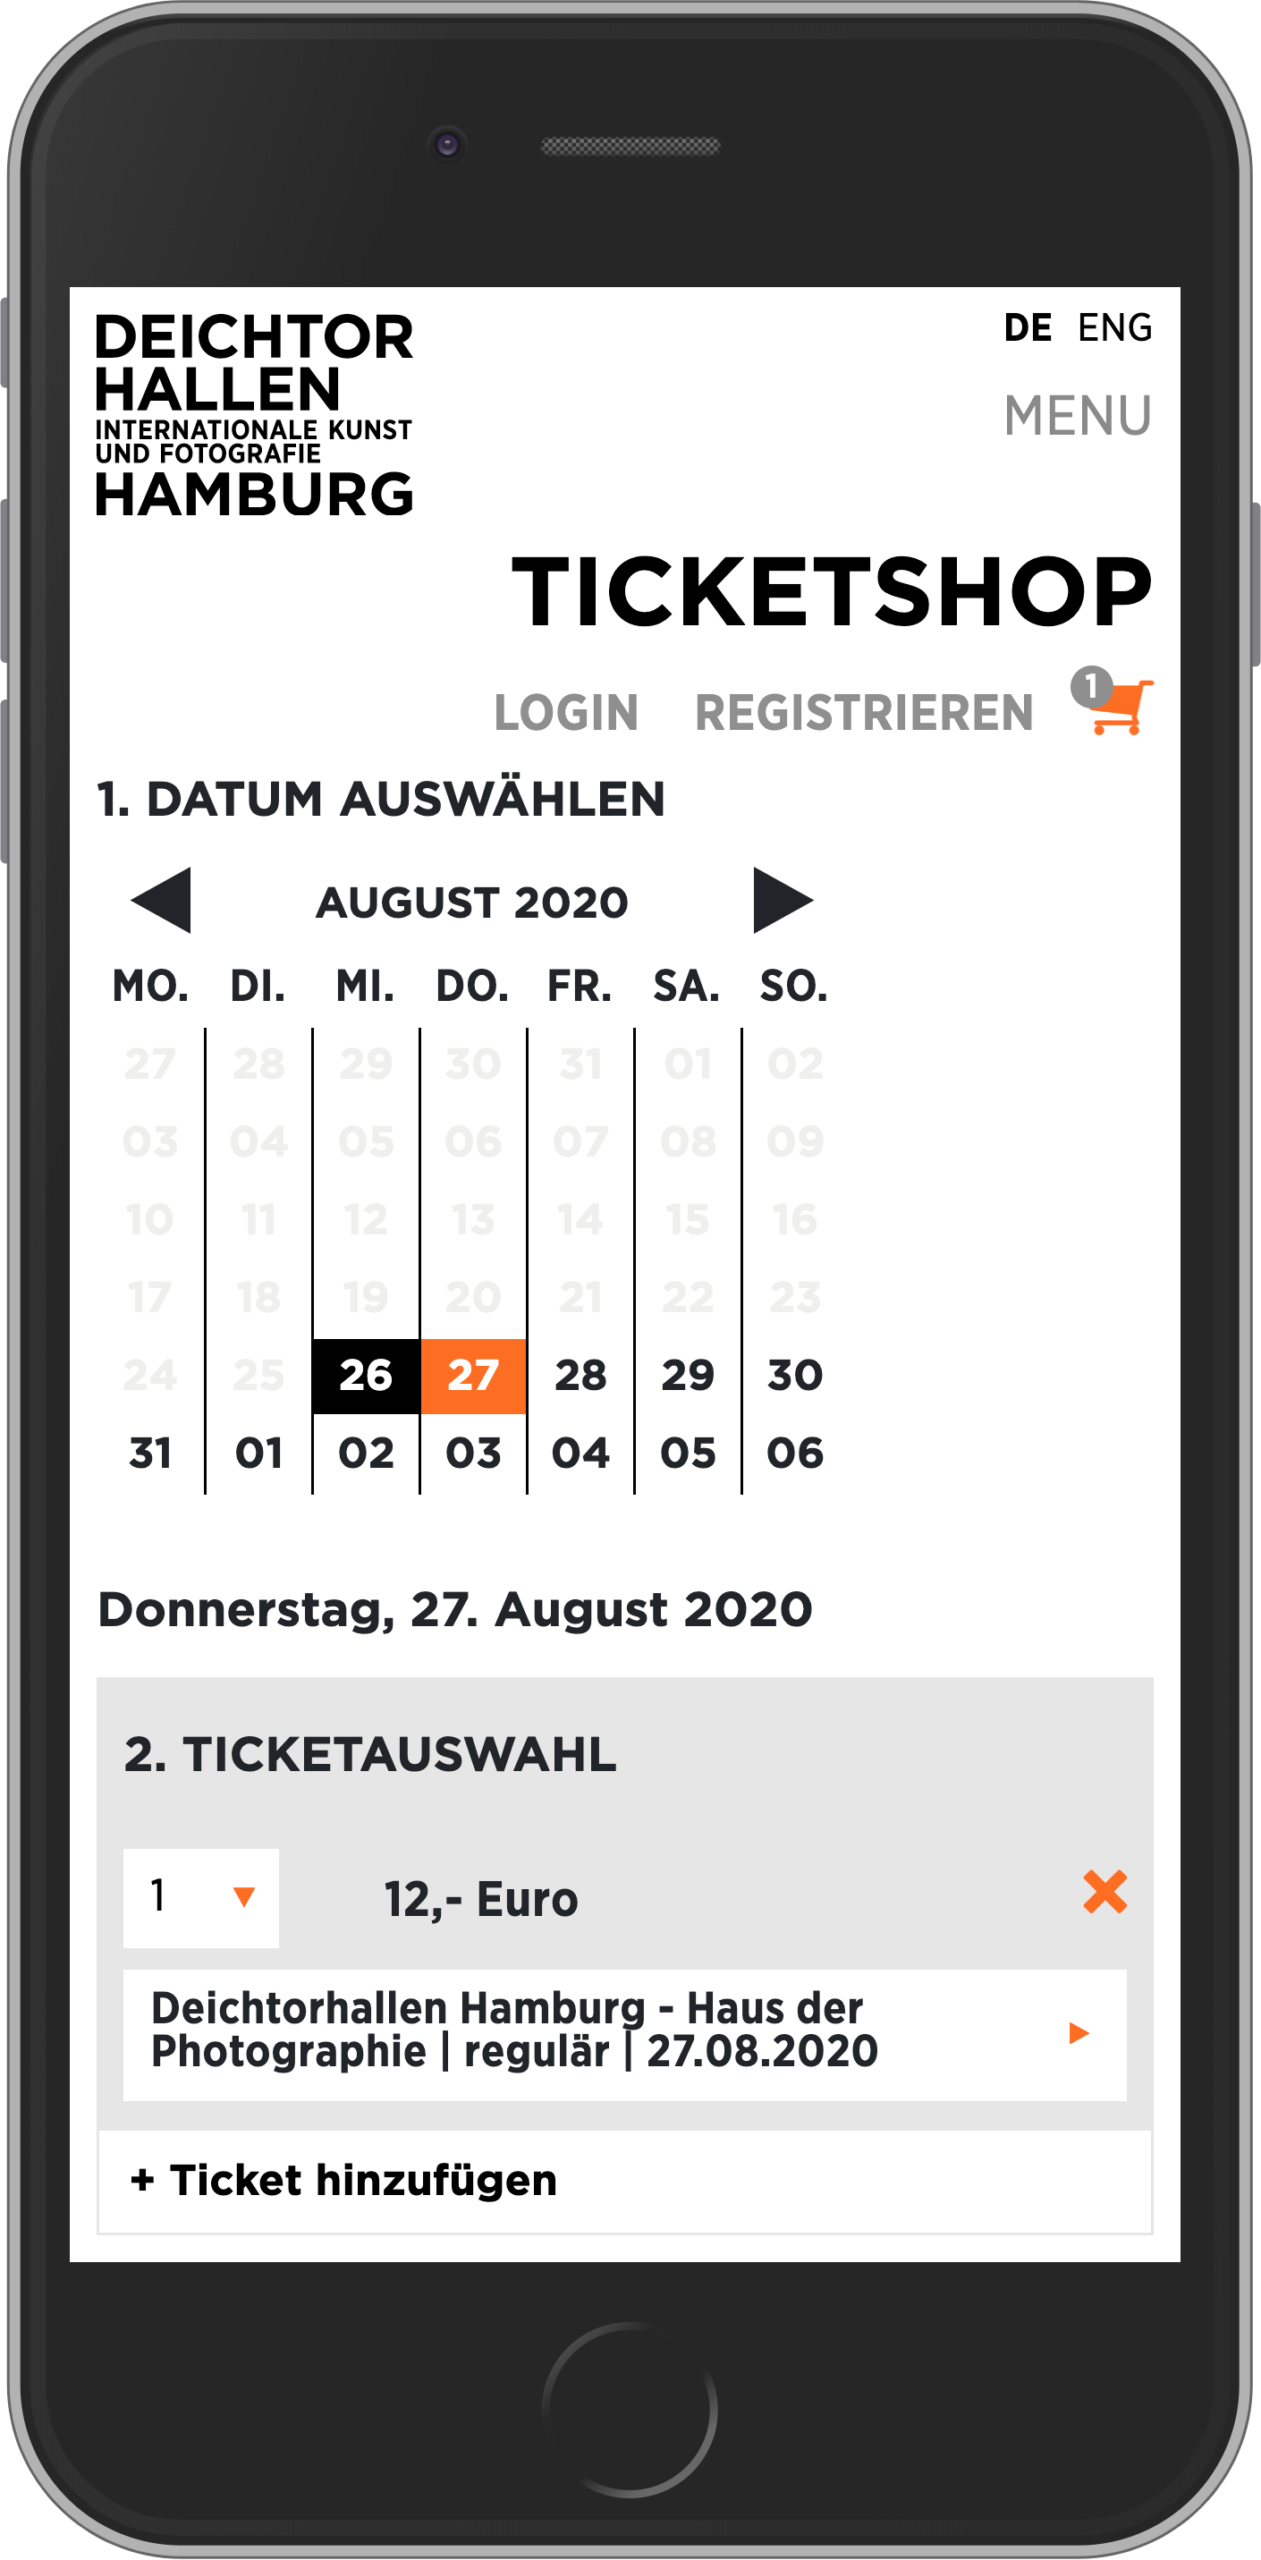 Mobile Ansicht des One-Pager Ticketkaufprozess im Online-Shop der Deichtorhallen Hamburg